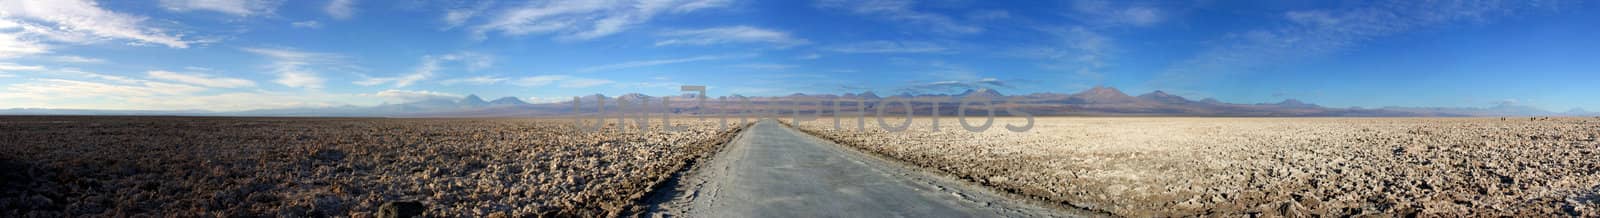 Panorama of Salar de Atacama by Marko5